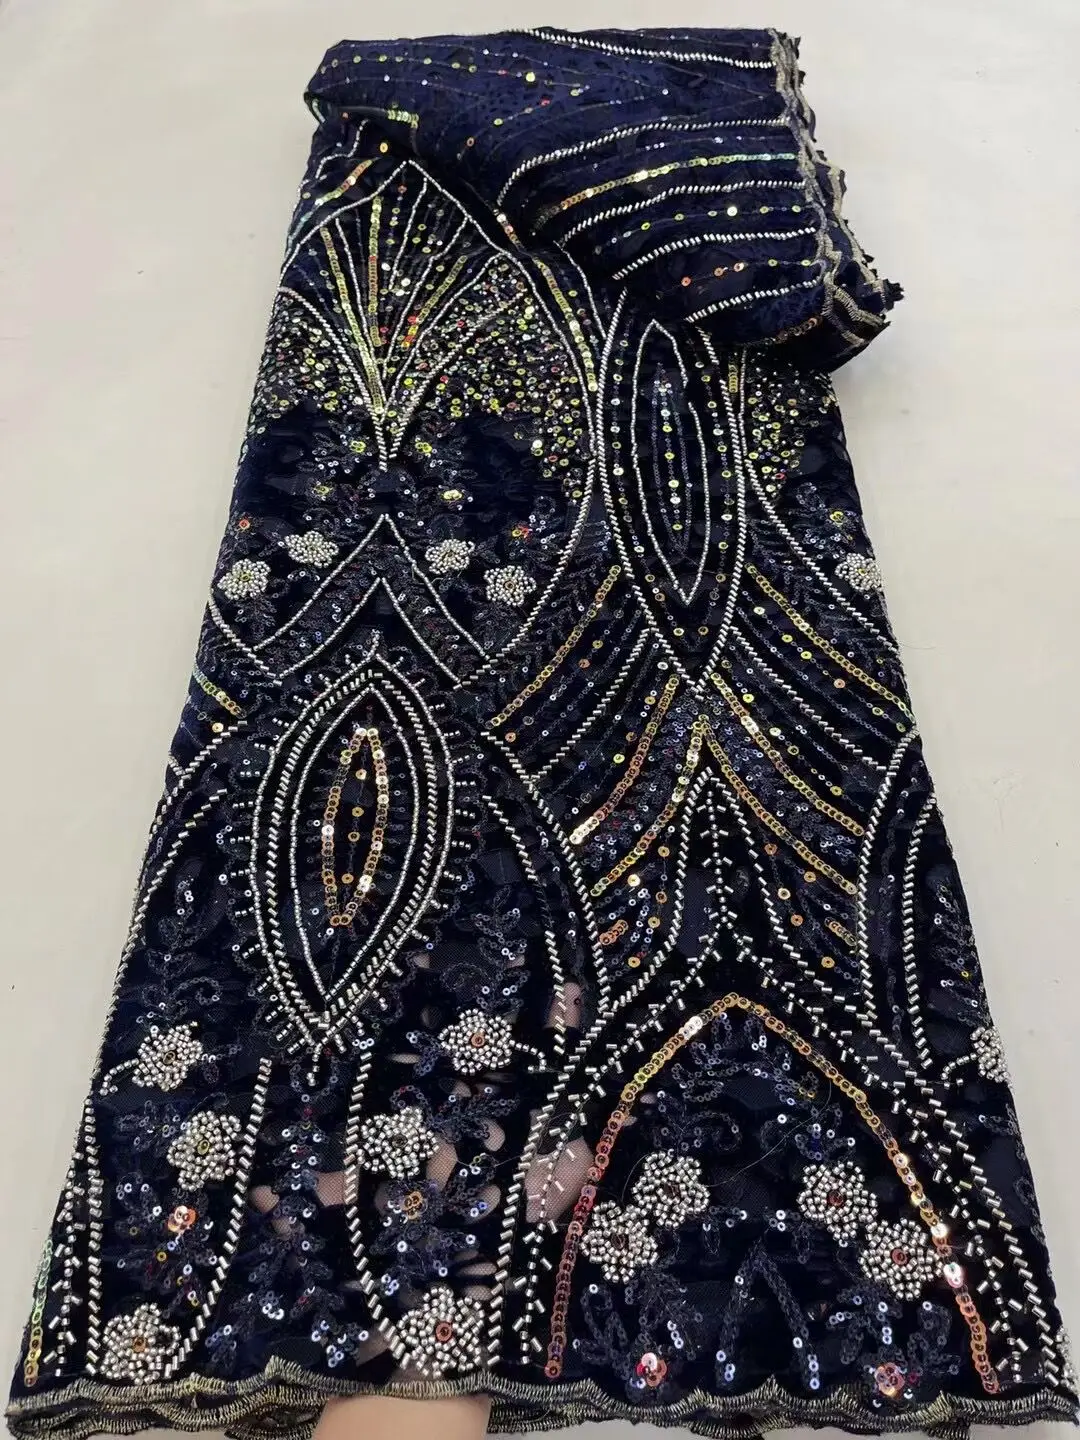 

Африканская вышивка, тюль, кружевная ткань, фототкань с блестками и бусинами, высокое качество, французская сетчатая кружевная ткань для свадебного платья